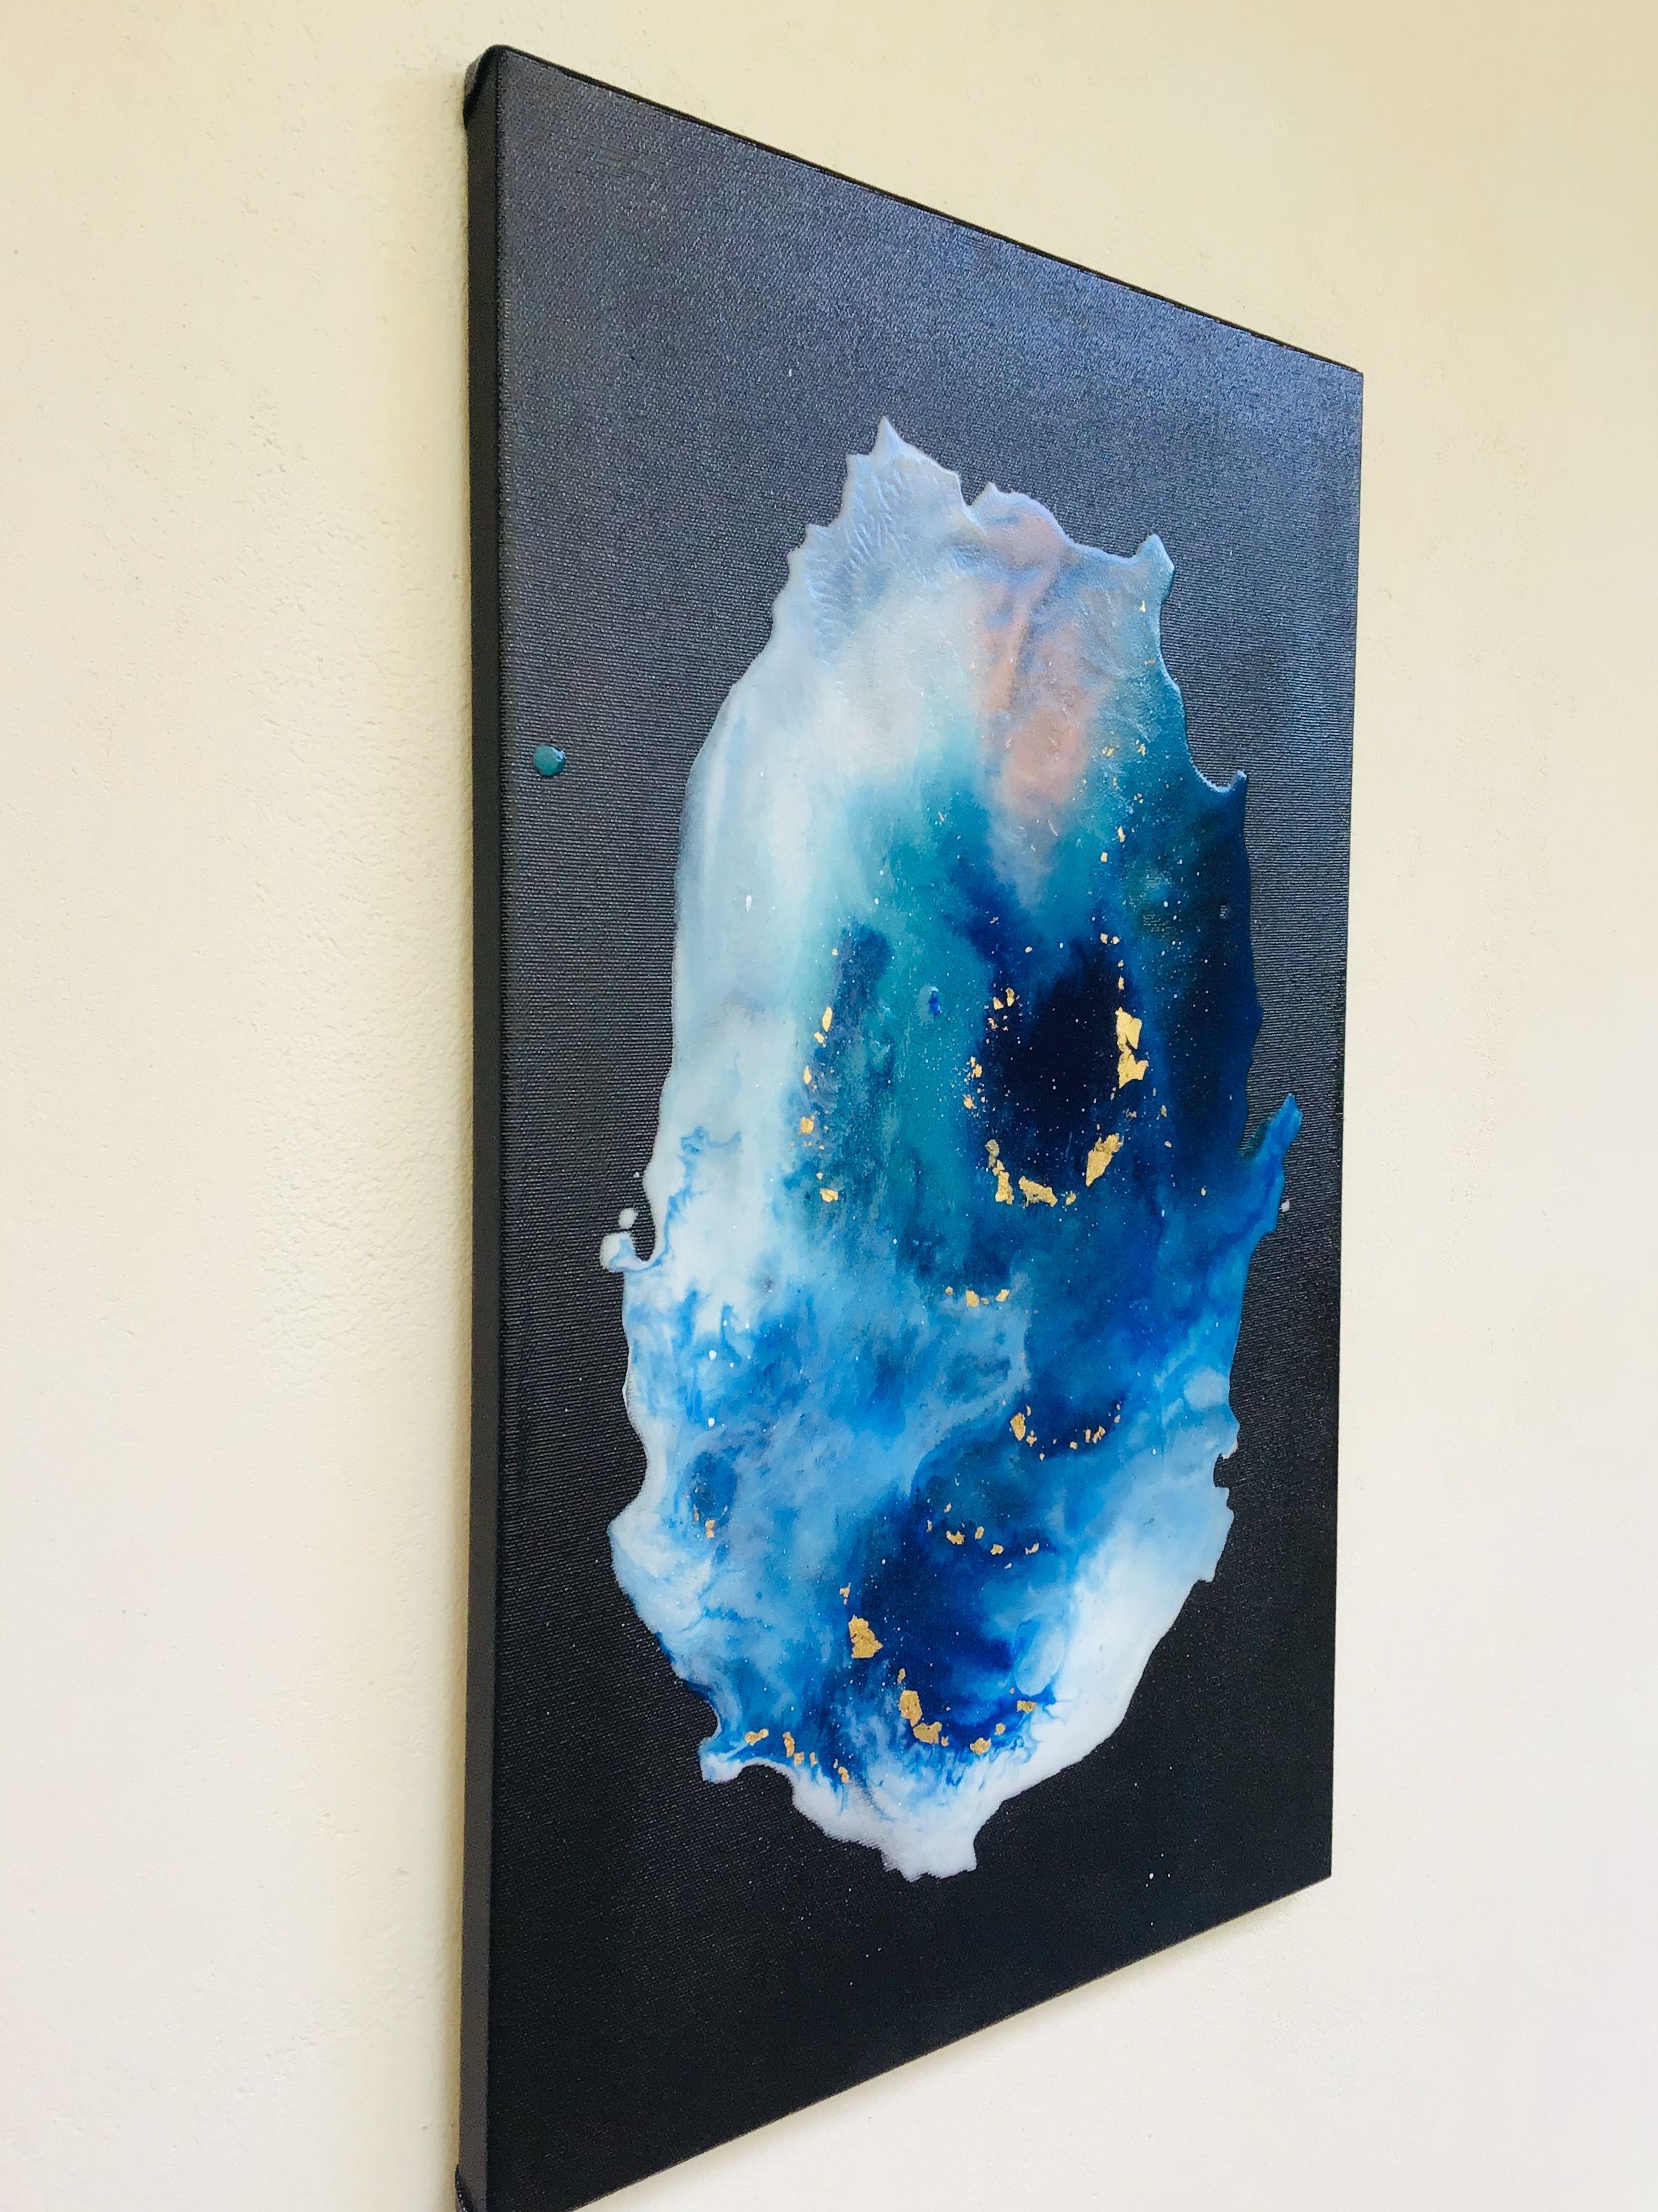 lagoon Nebula 14, Mixed Media on Canvas - Abstract Mixed Media Art by Maria Bacha